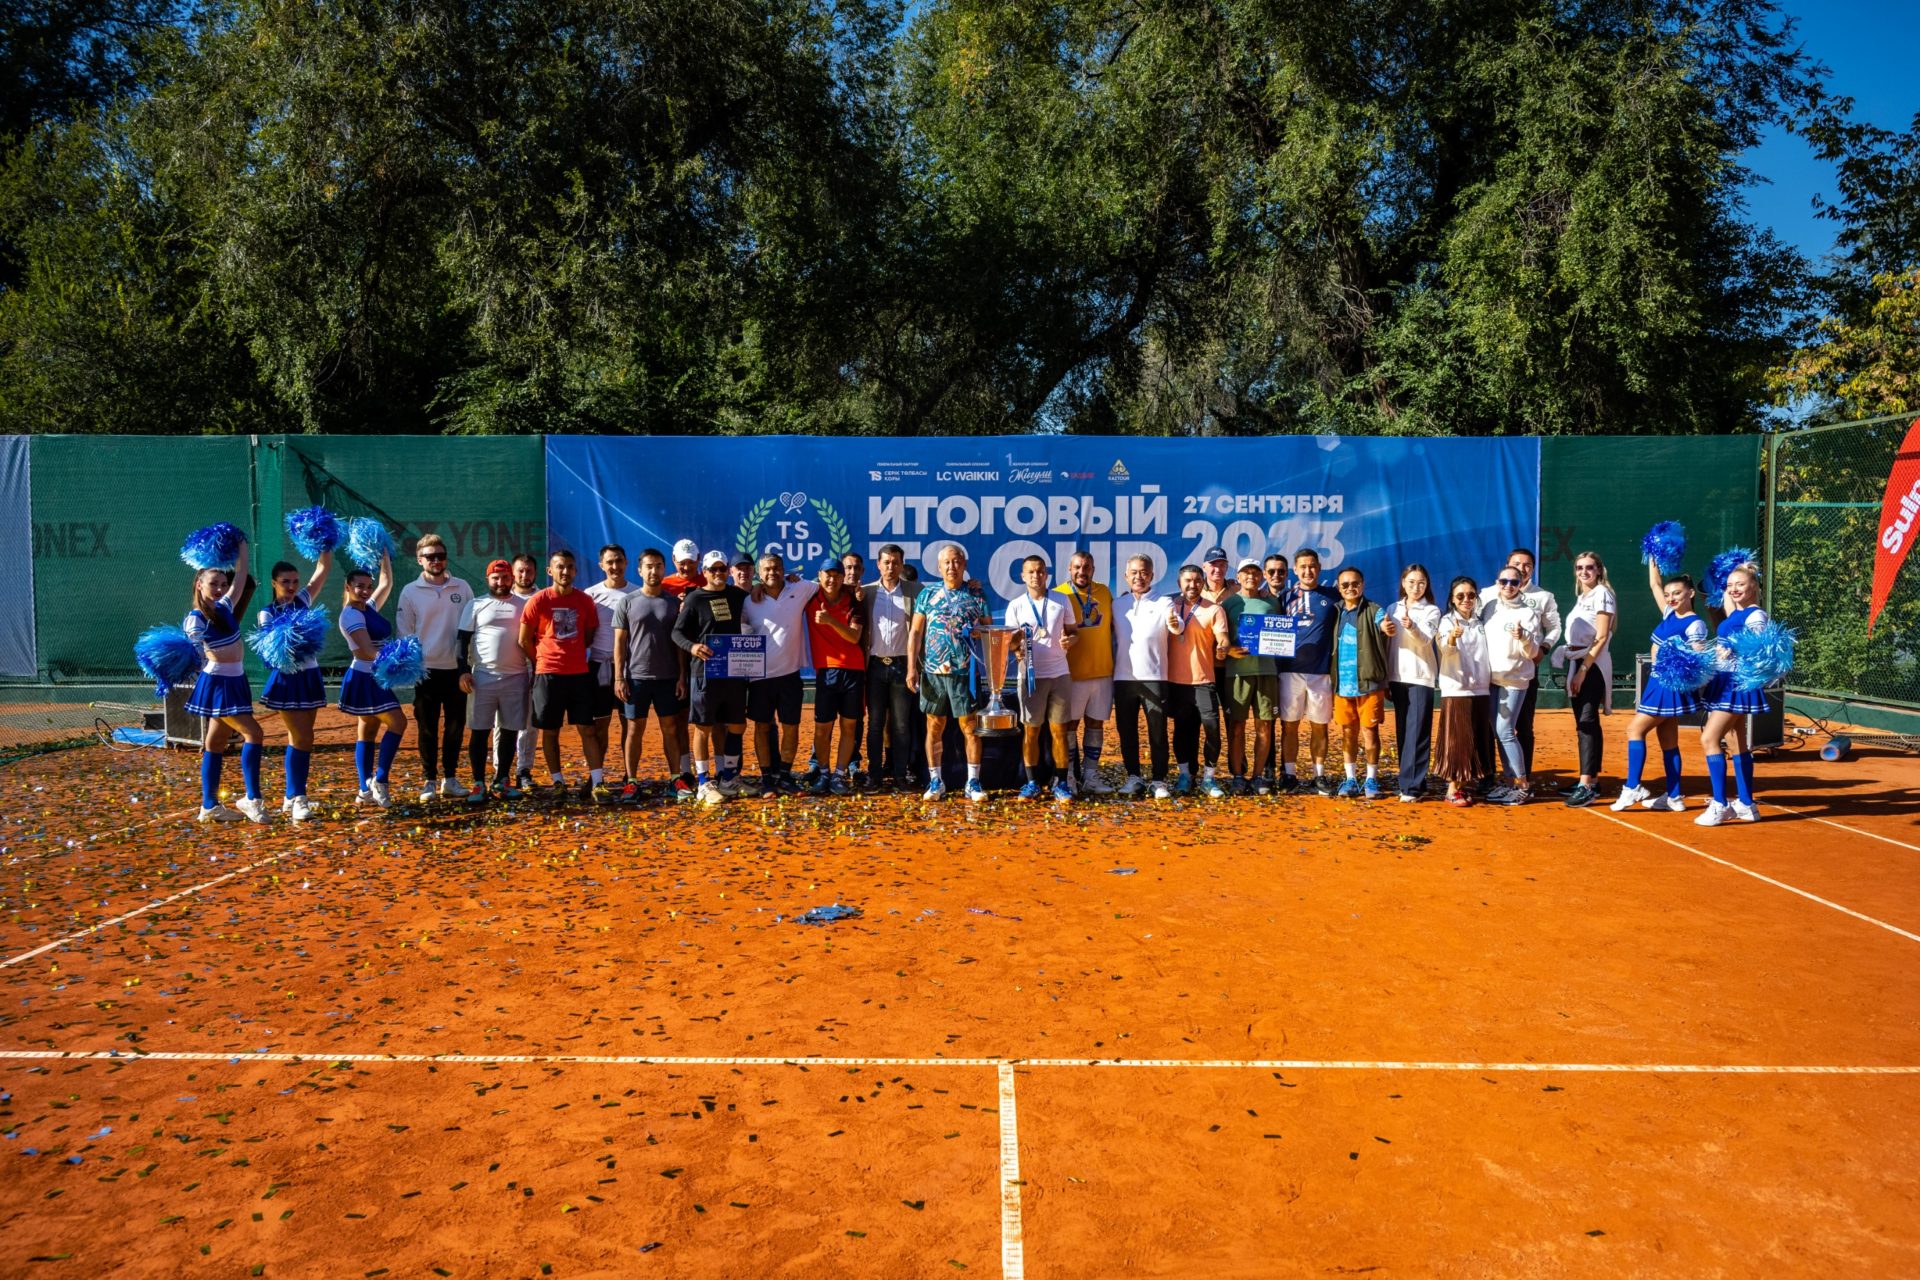 Праздник тенниса и жизни: завершение сезона Теннисной Лиги TS 2023